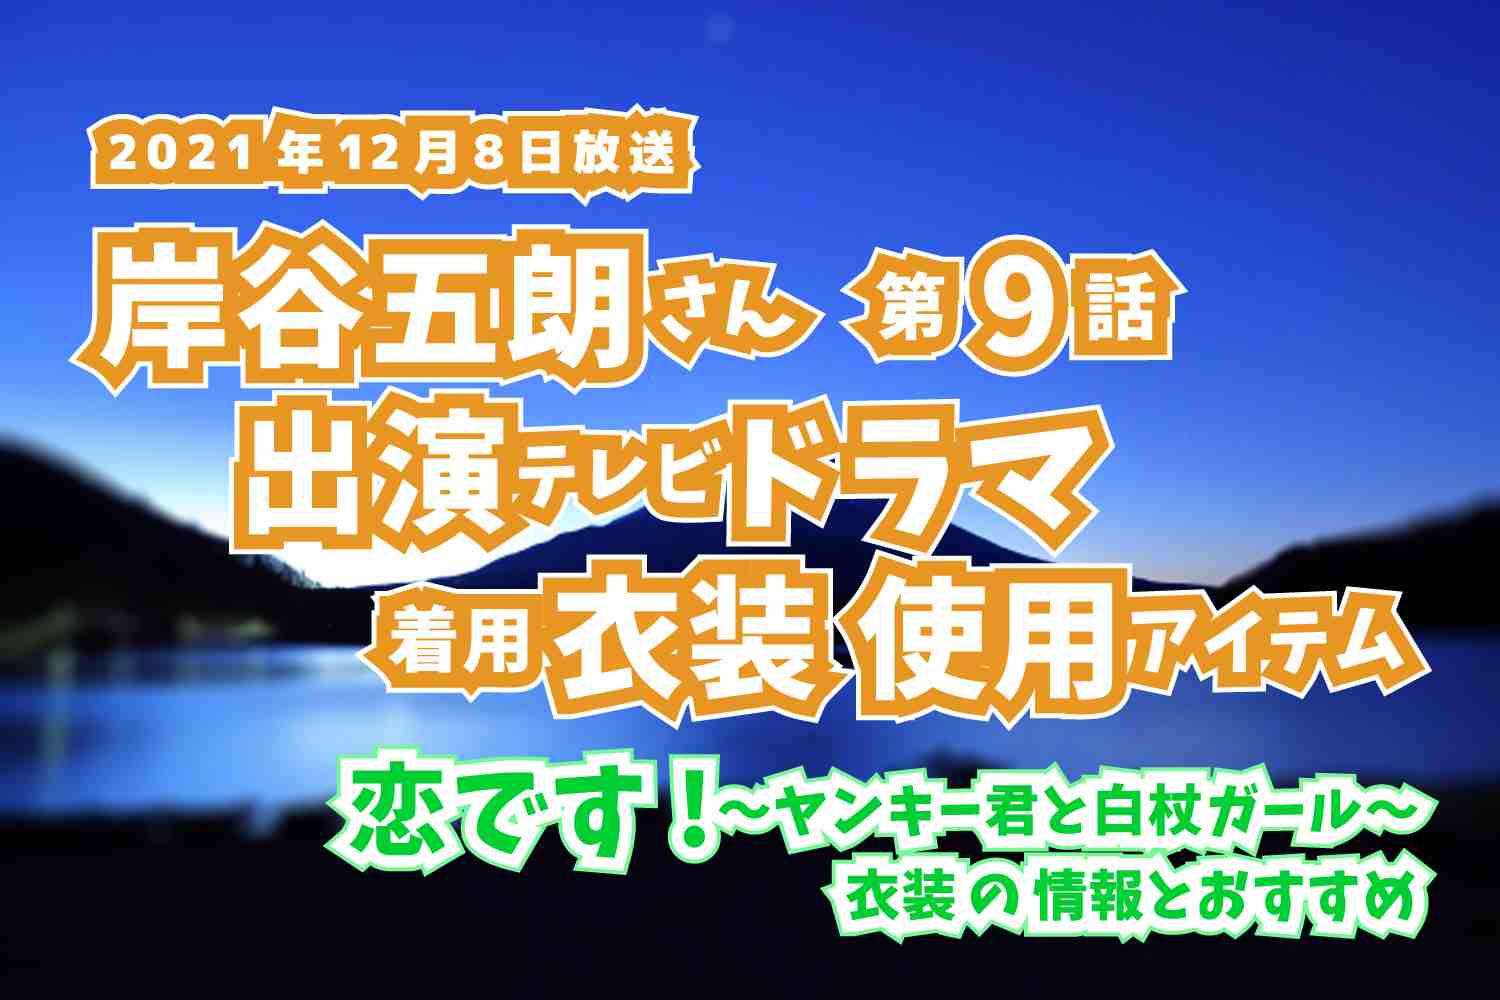 恋です!〜ヤンキー君と白杖ガール〜　岸谷五朗さん　ドラマ　衣装　2021年12月8日放送